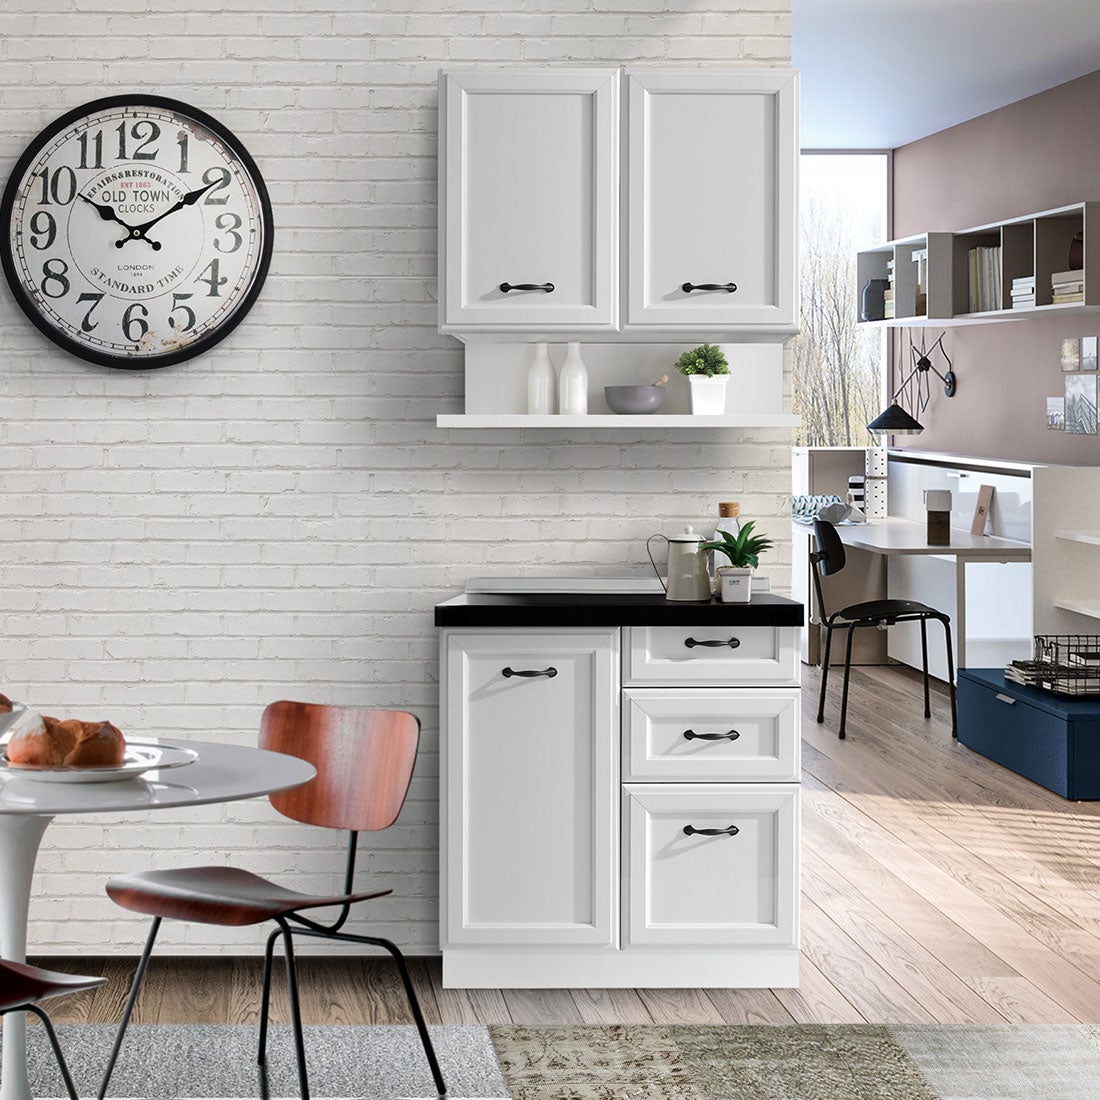 ห้องครัวขนาดกะทัดรัดและครัวสำเร็จรูป ขนาด 80 ซม. รุ่น Kourmet สีขาว ท็อป HPL01